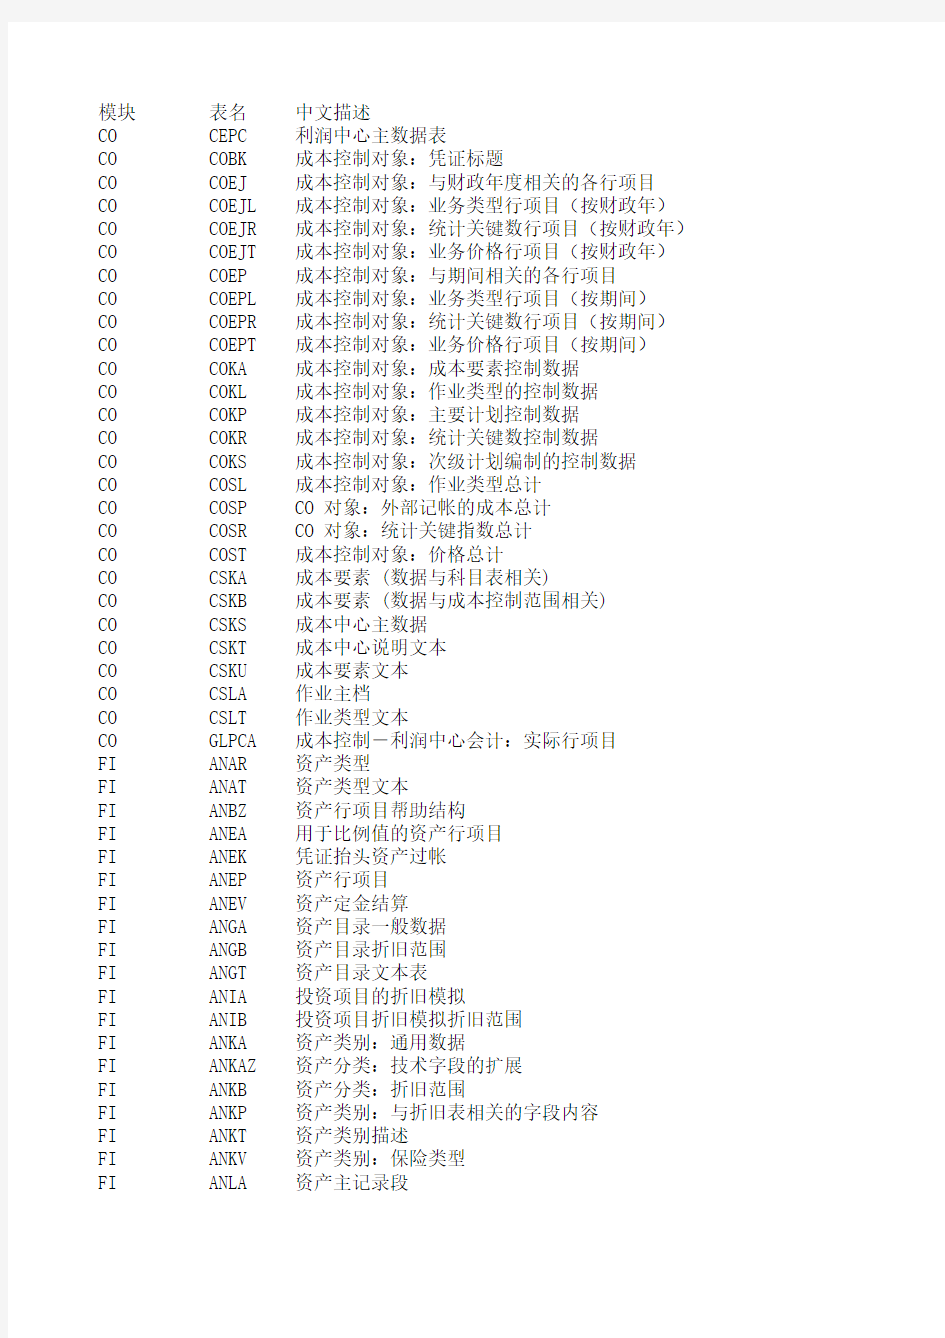 SAP常用表及中文描述